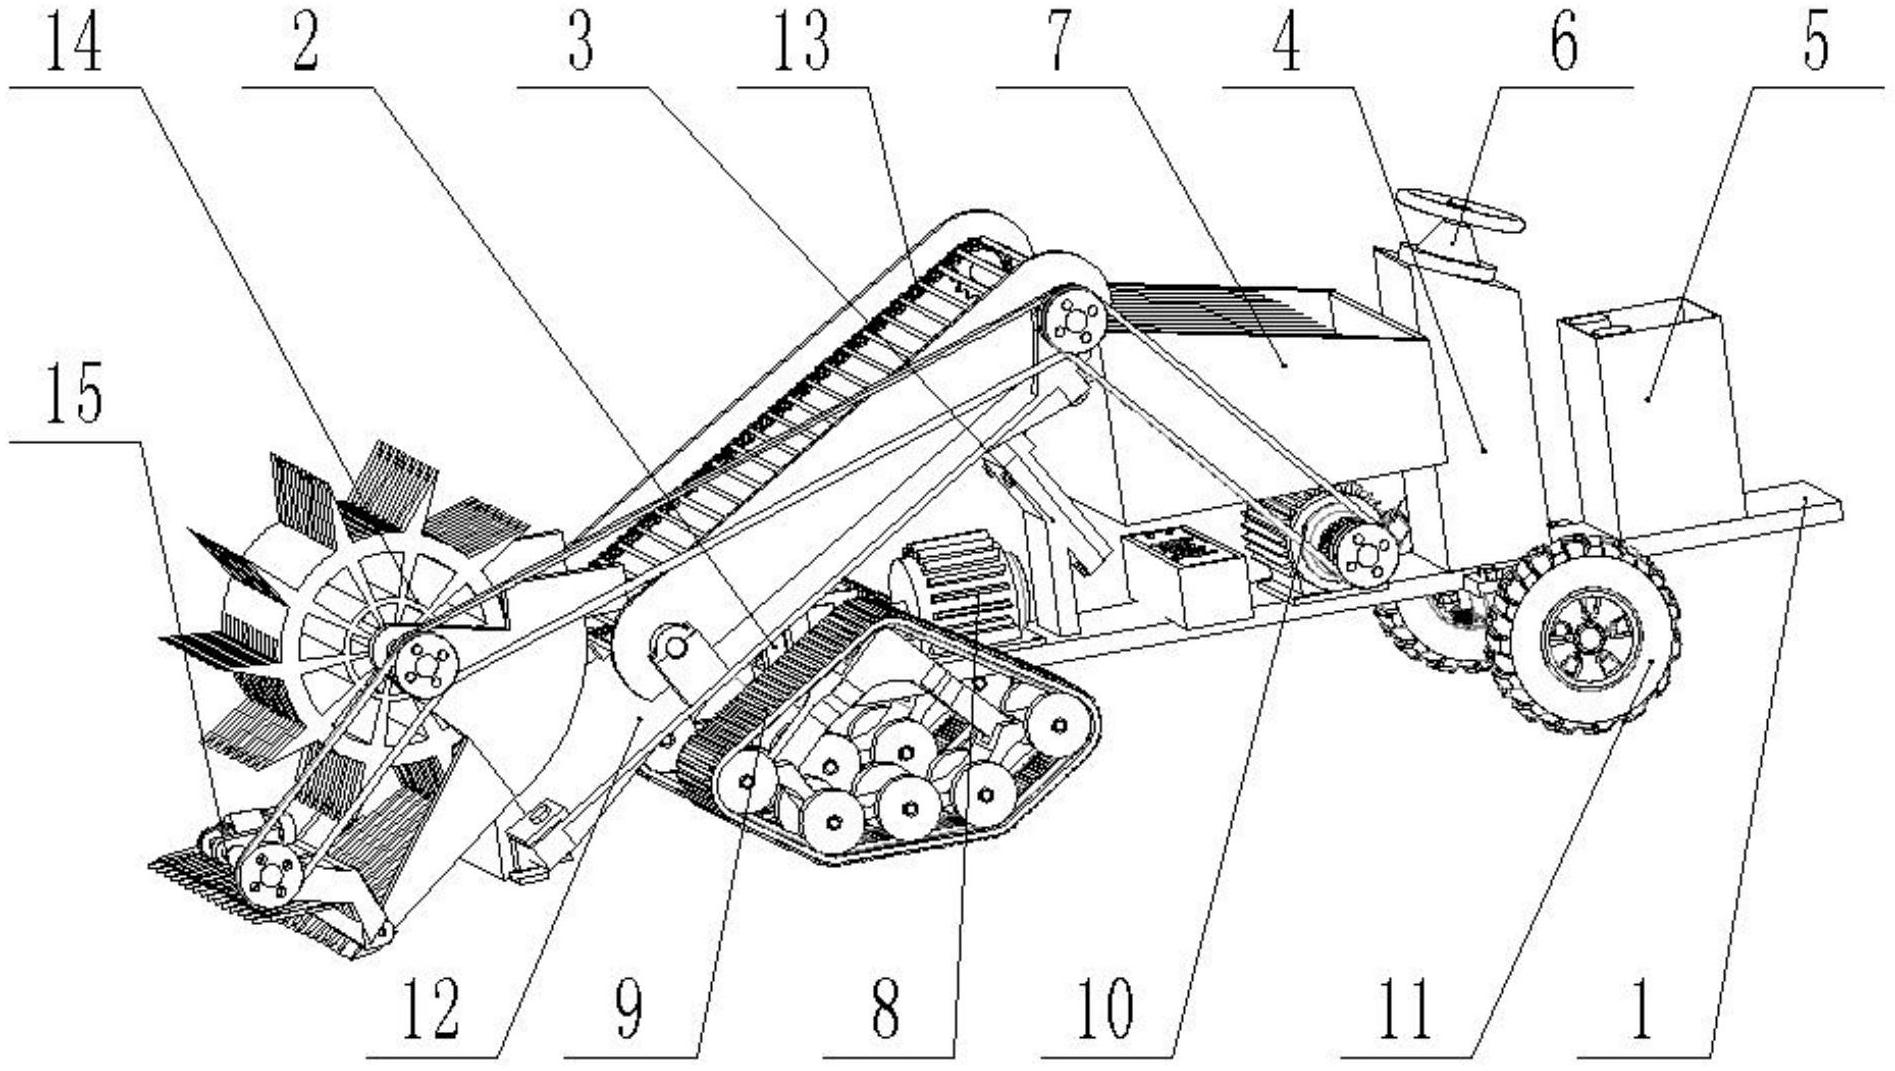 洋马85收割机结构图图片